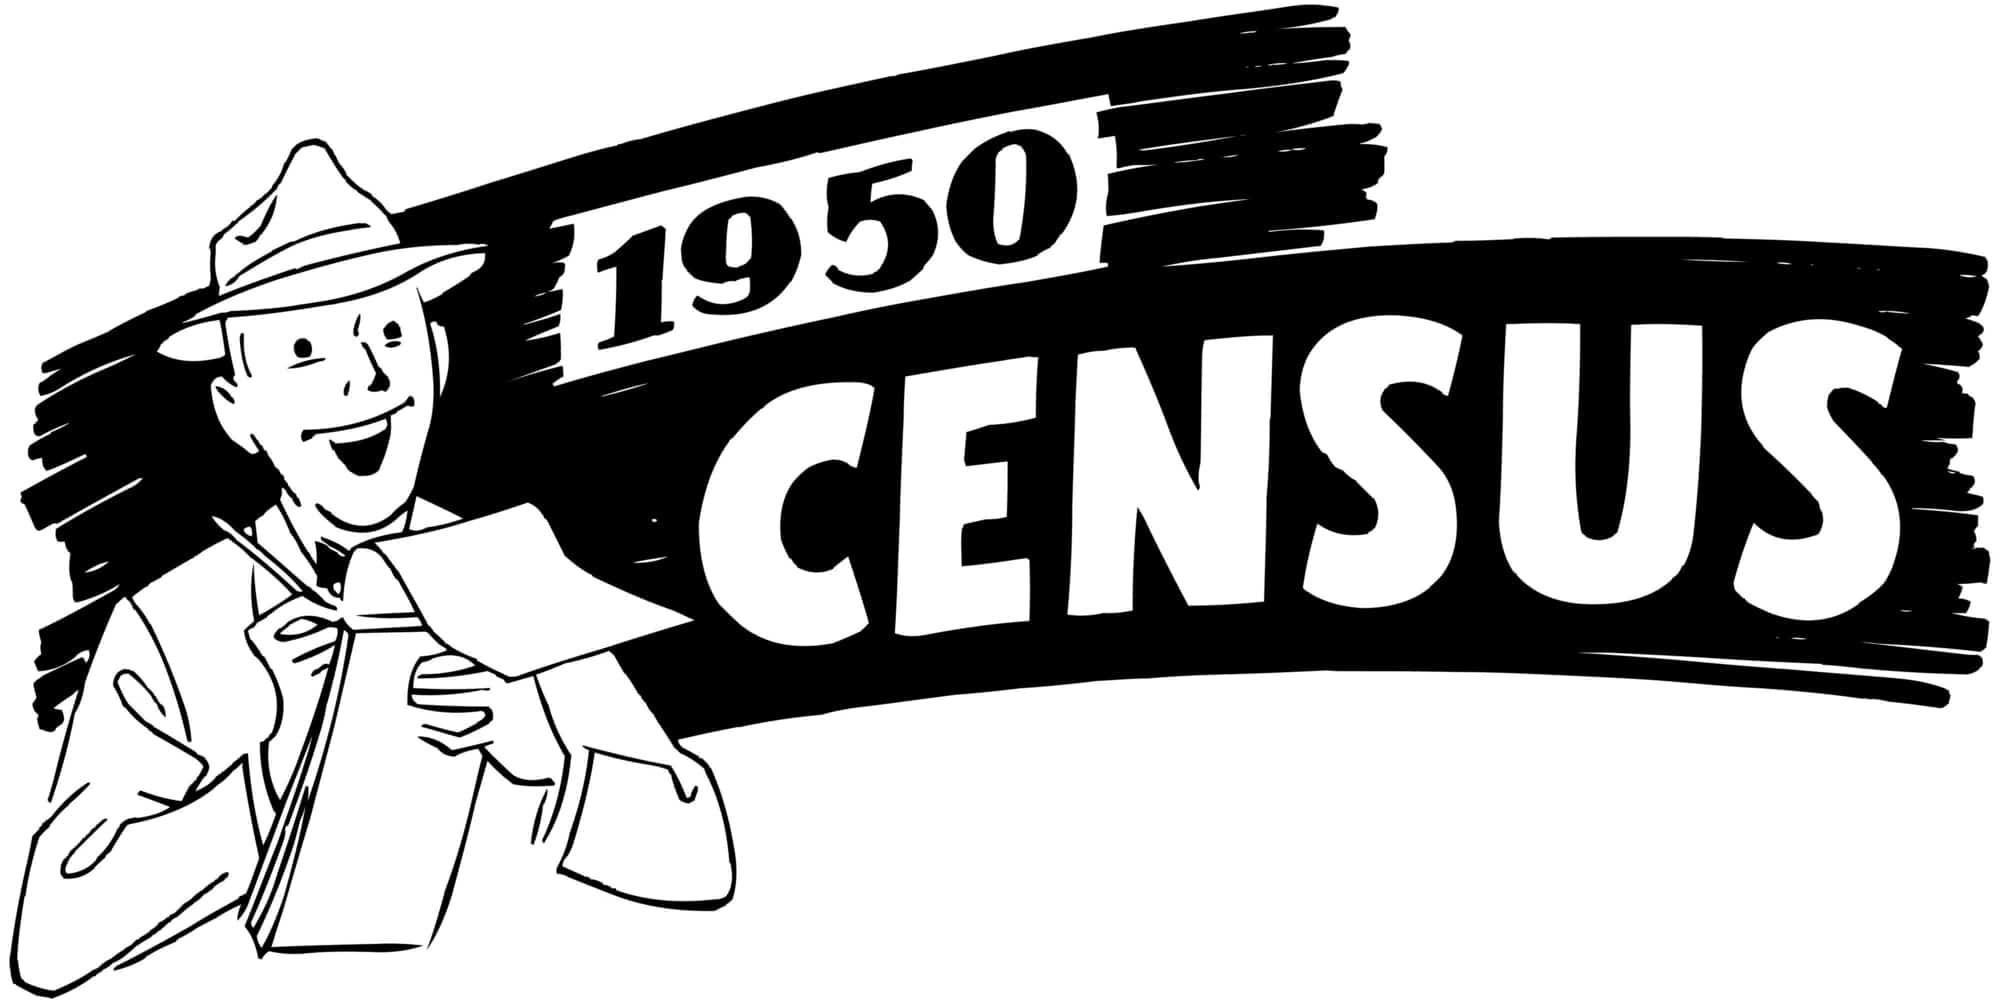 1950 census statistics